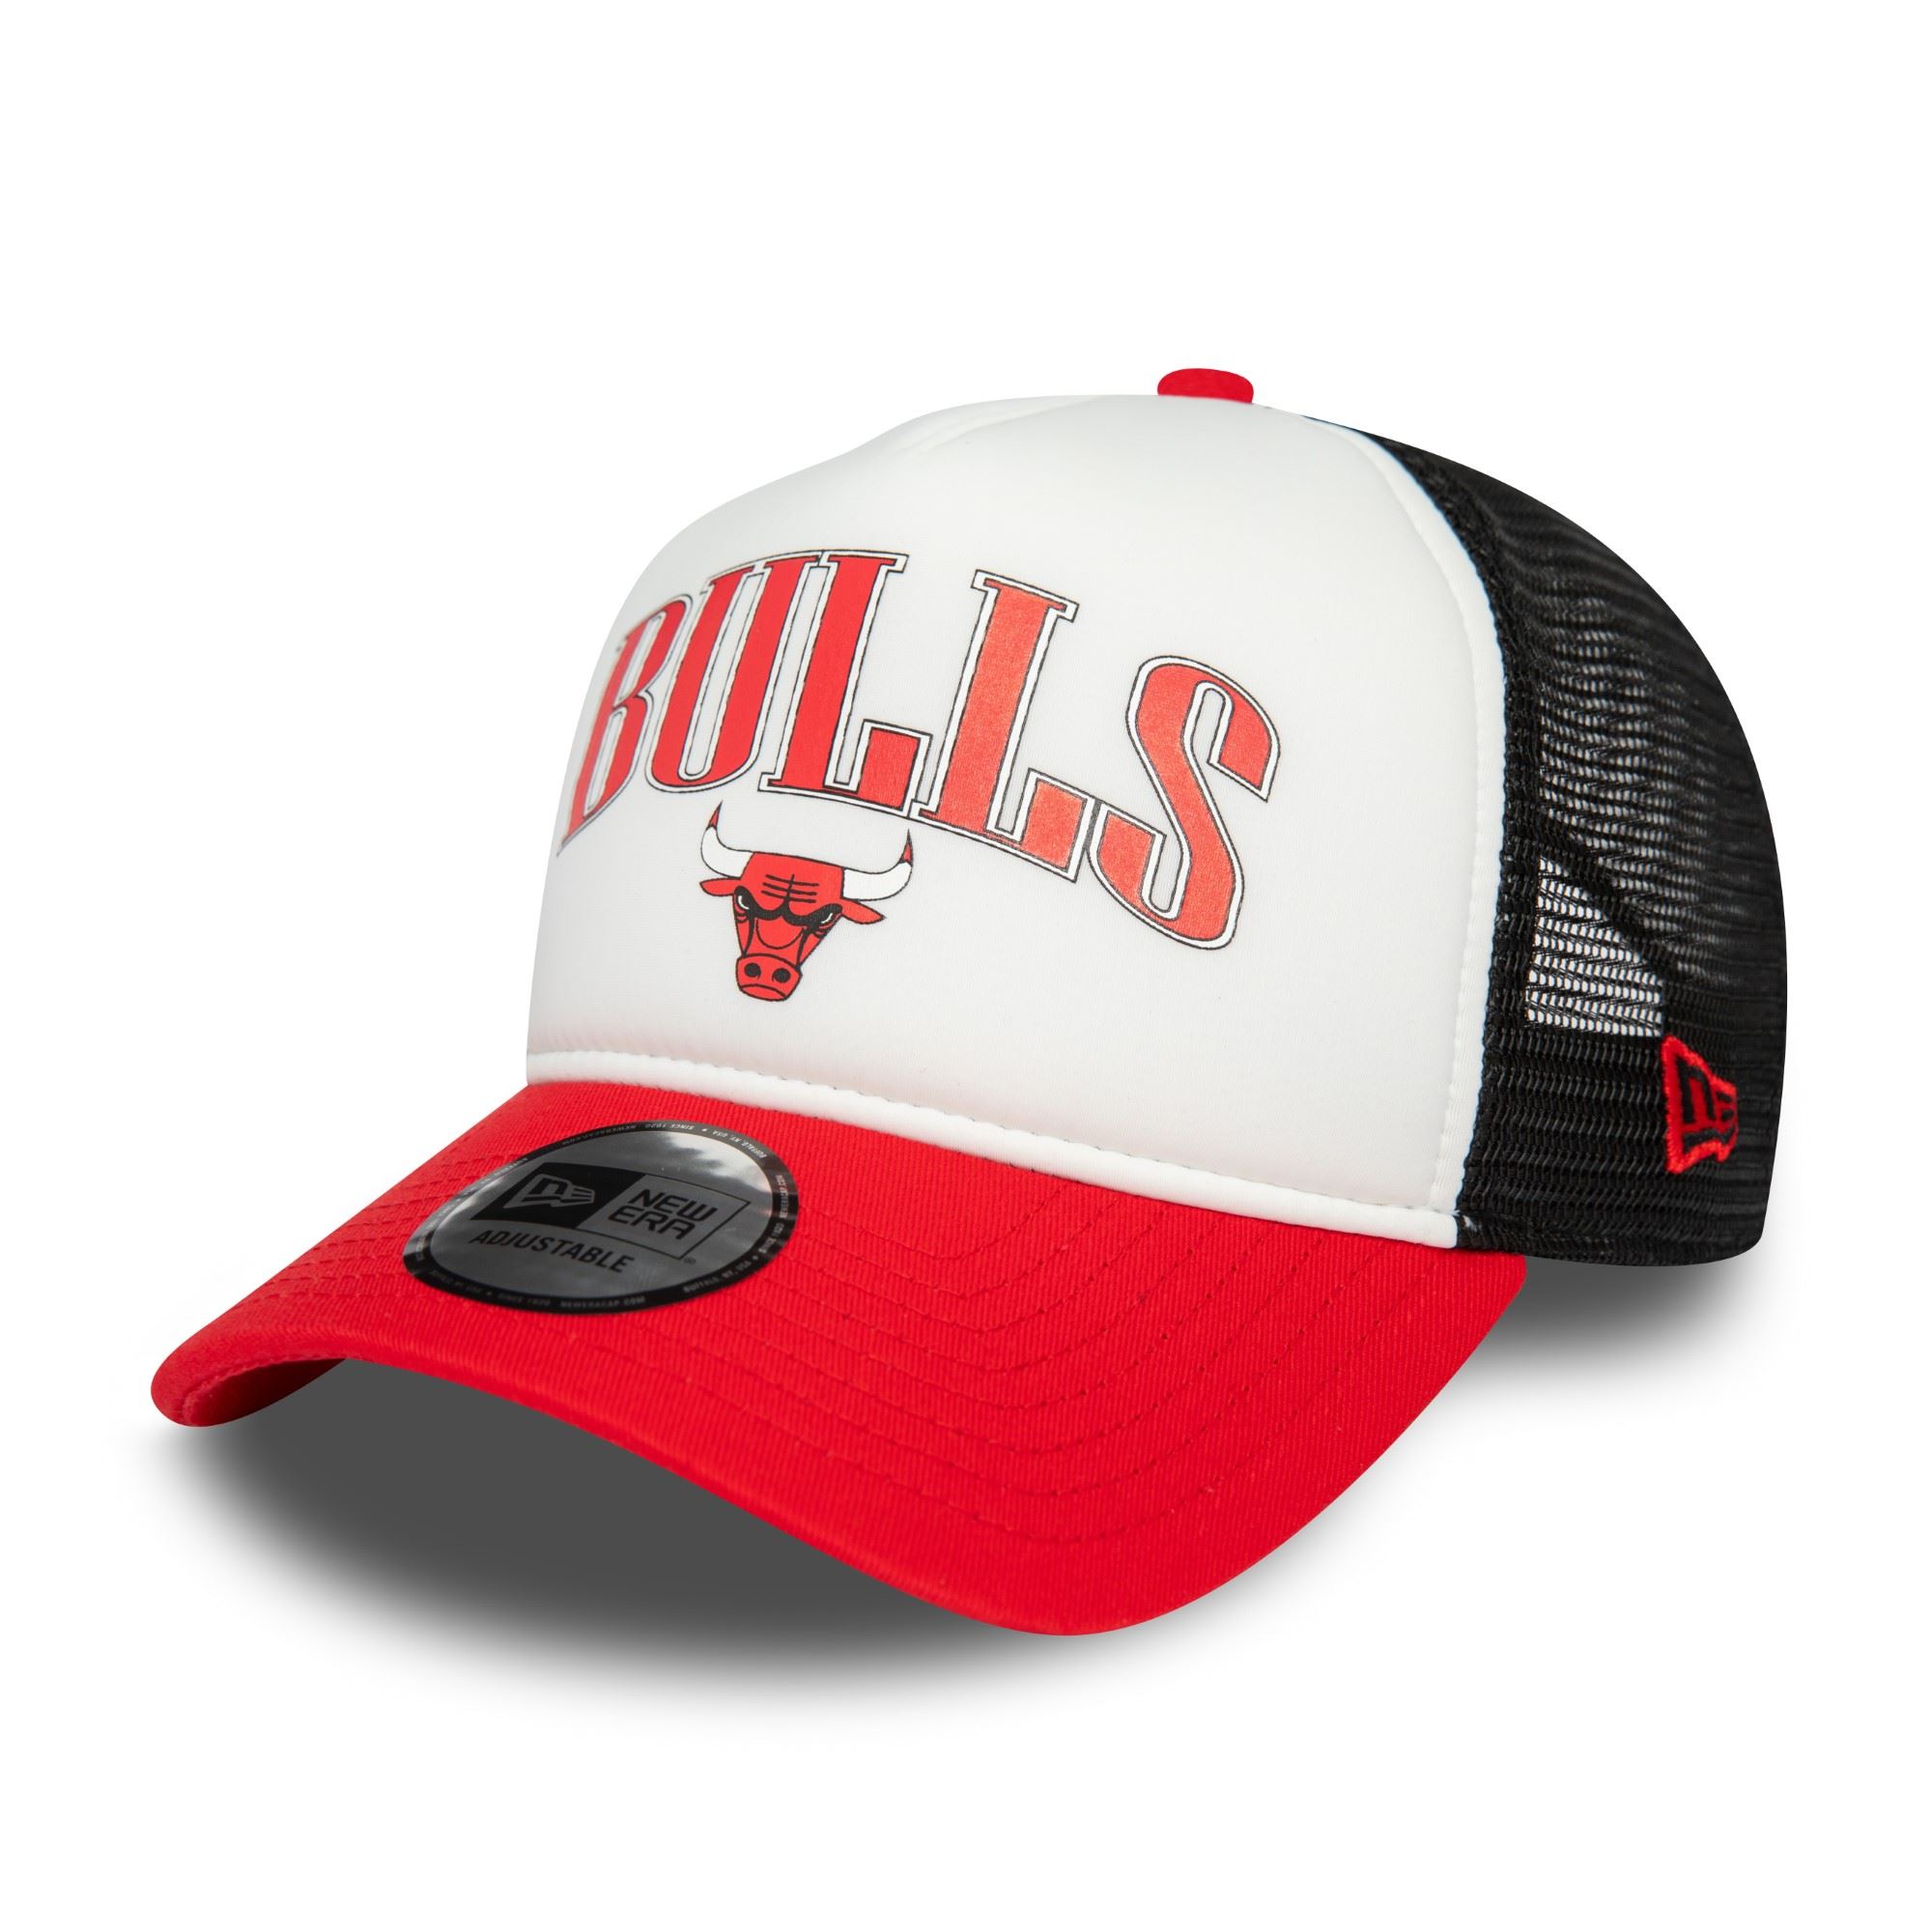 Chicago Bulls NBA Retro Weiß Schwarz Rot Verstellbare A-Frame Trucker Cap New Era